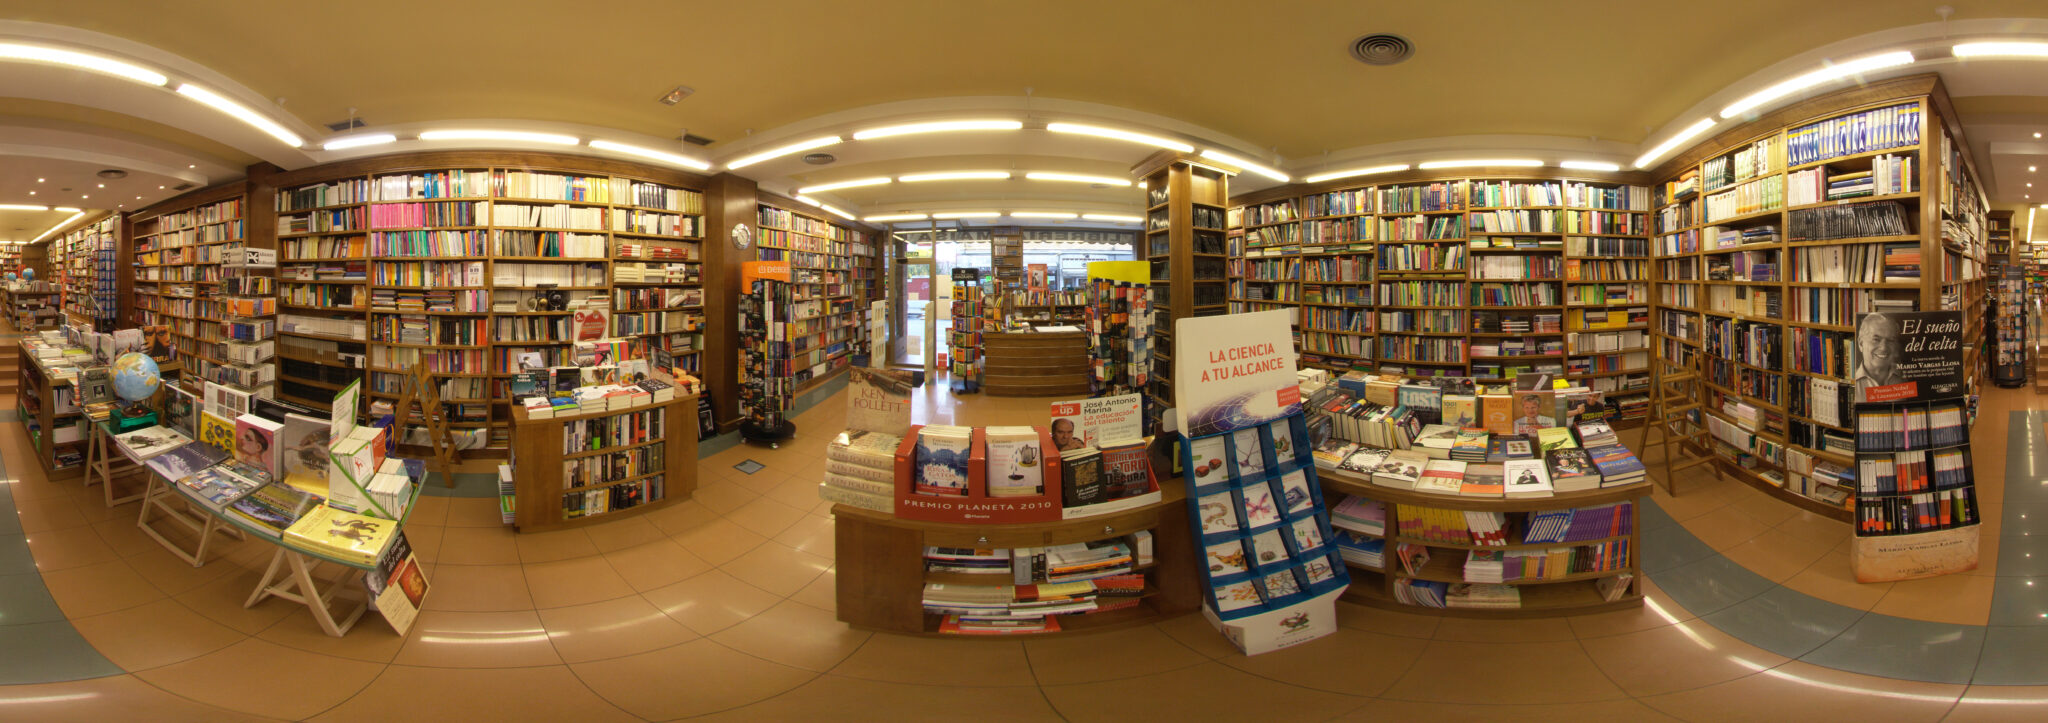 imagen de la librería en 360 grados